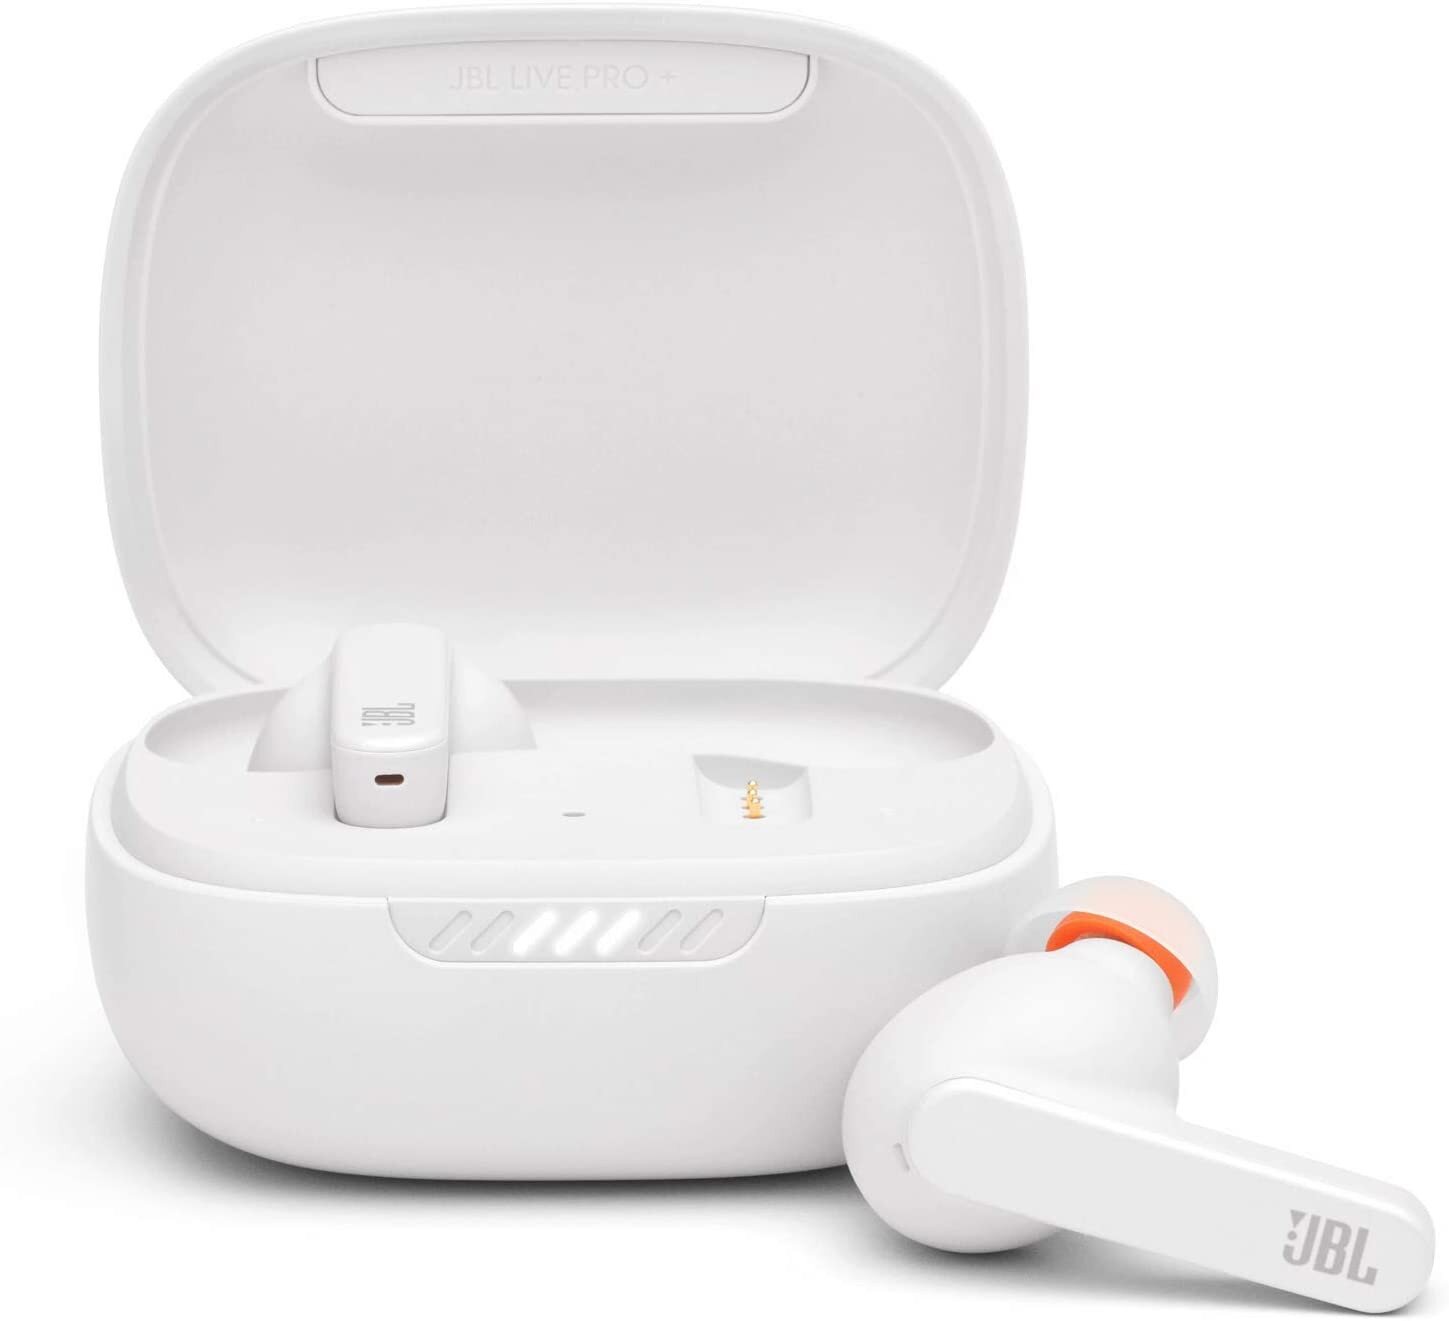 JBL Live Pro+ TWS True Wireless In-Ear NC Headphones - White